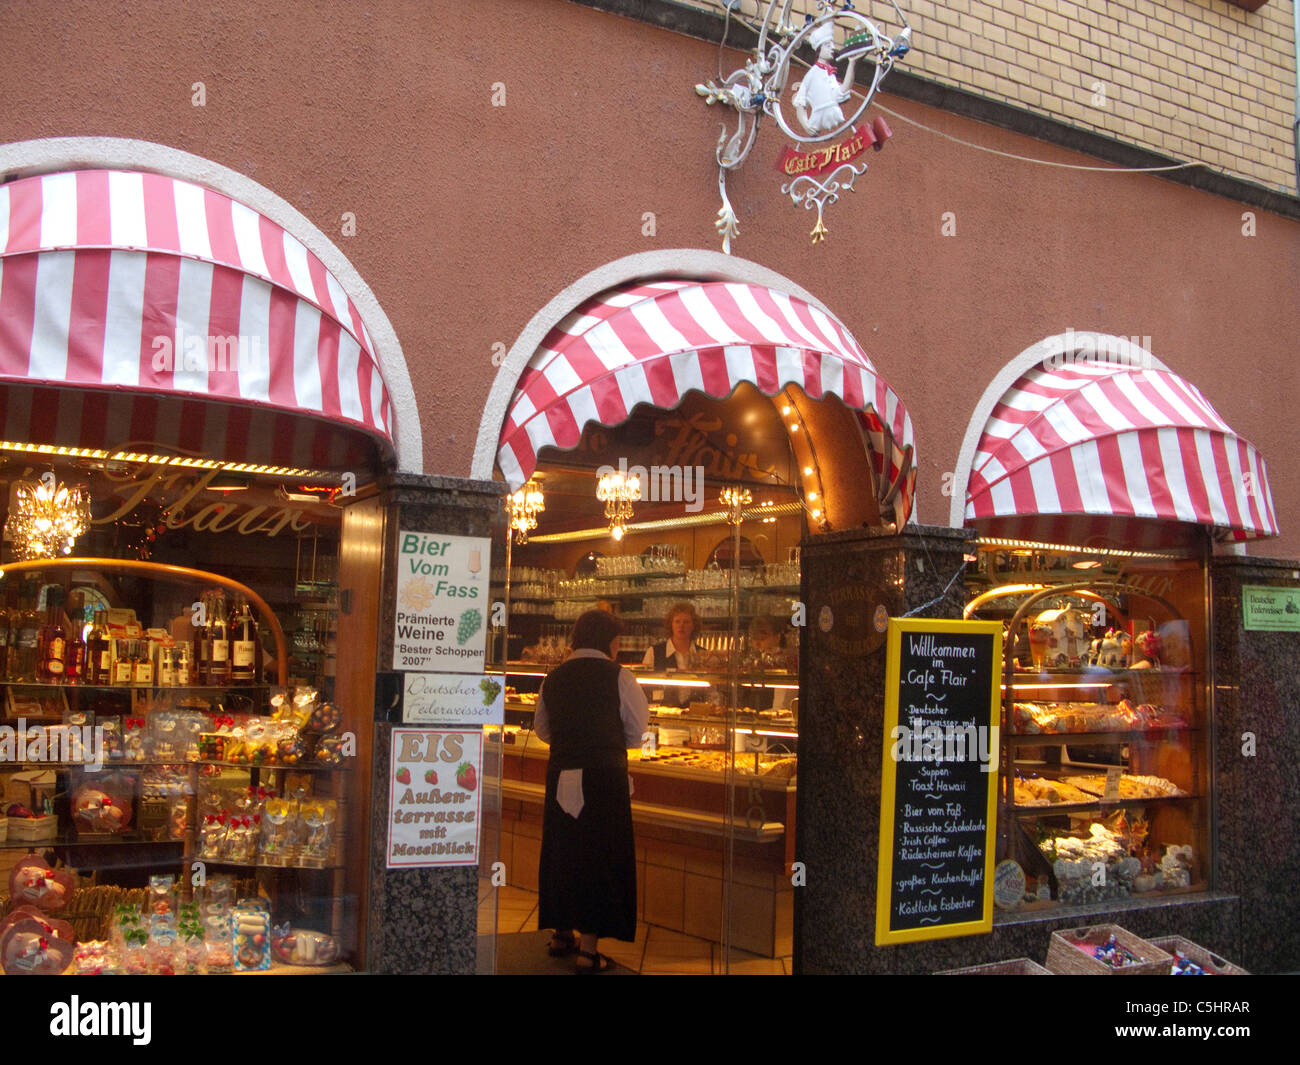 Konditorei und Cafe im historischen Stadtkern, Cochem, dolciumi e caffè nella città vecchia, Moselle Foto Stock